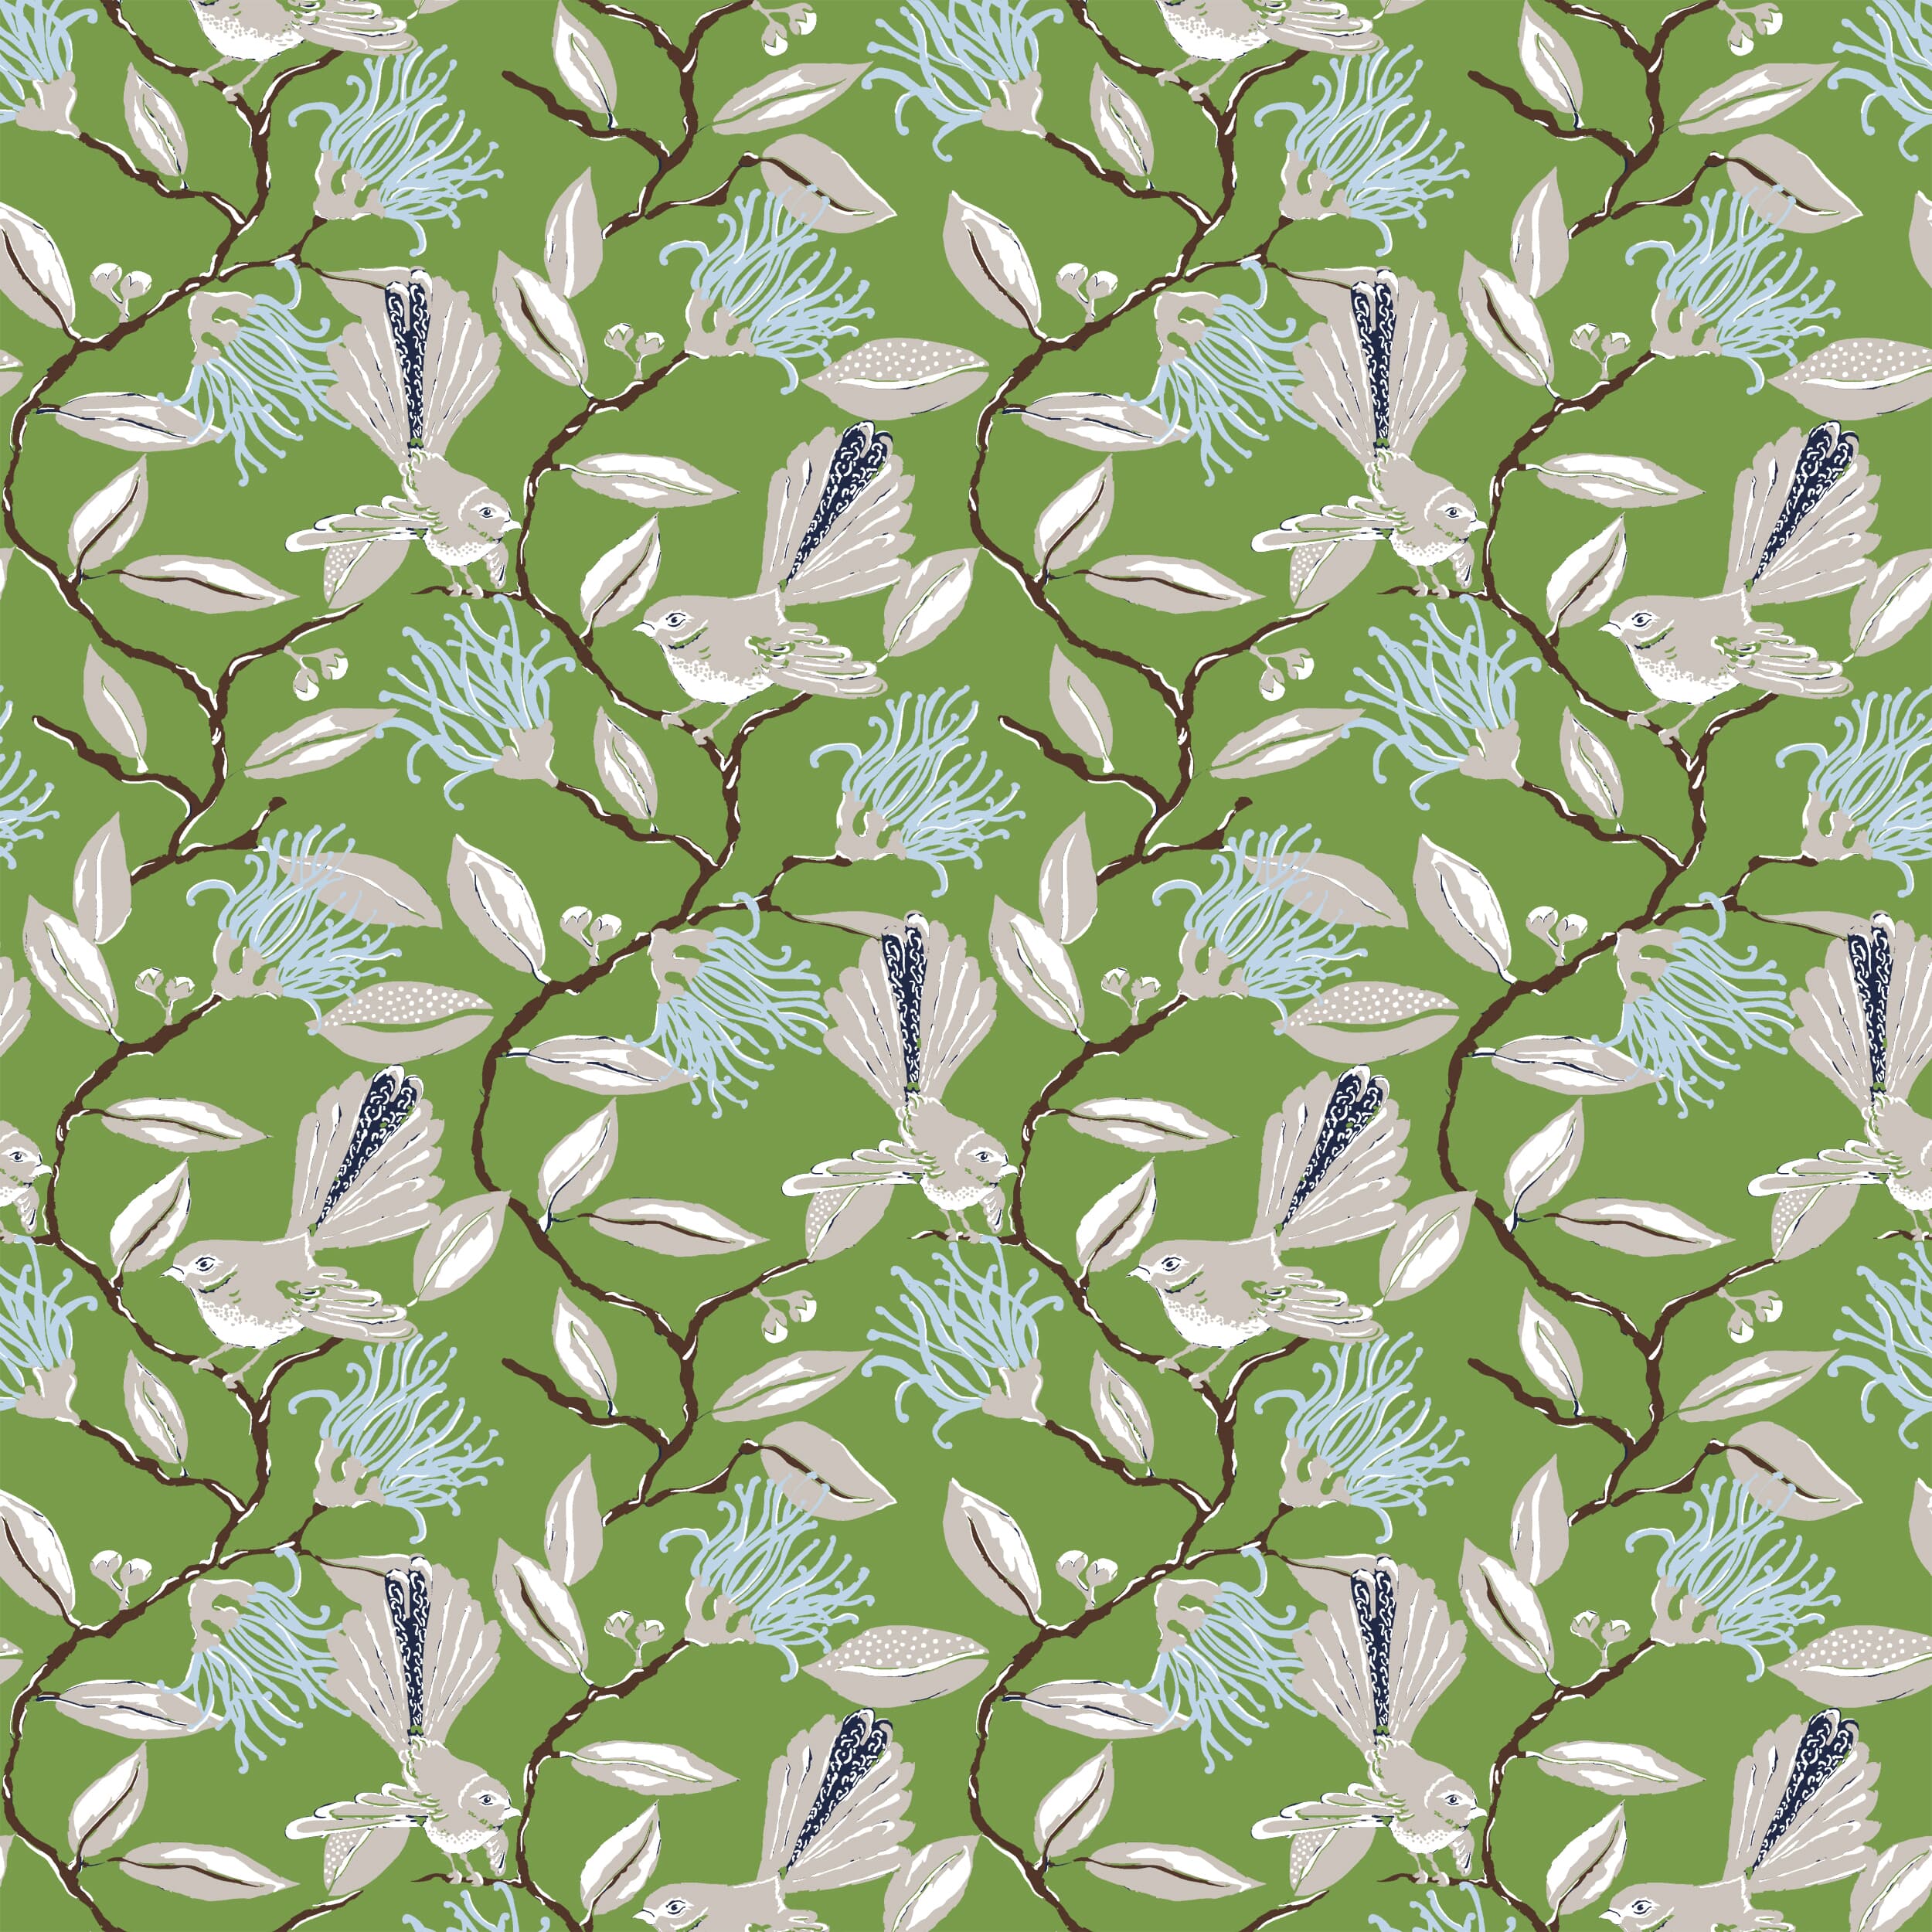 W05vl-2 Onlooker Grass Wallpaper by Stout Fabric